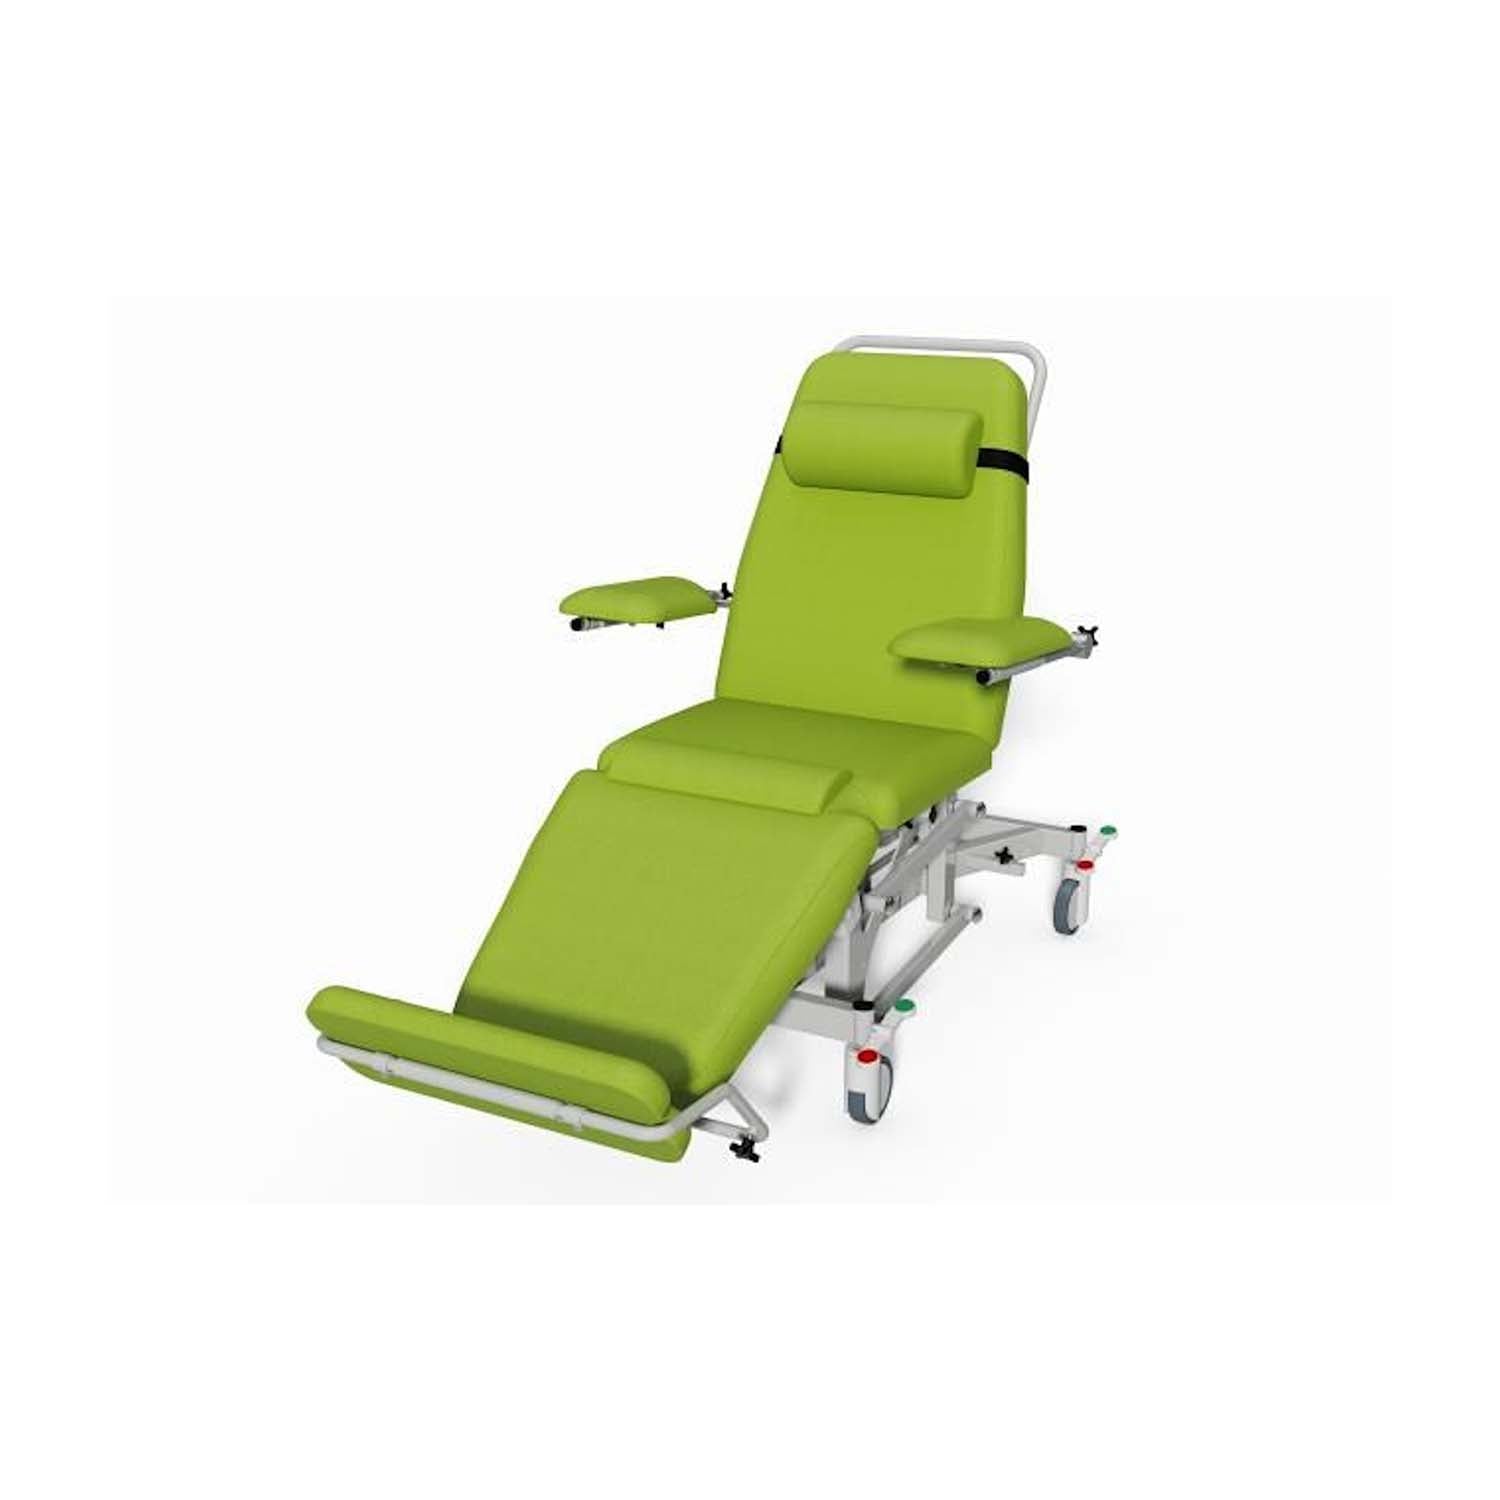 Plinth 2000 Model 93DYE Dialysis Chair | Column Lift | Citrus Green